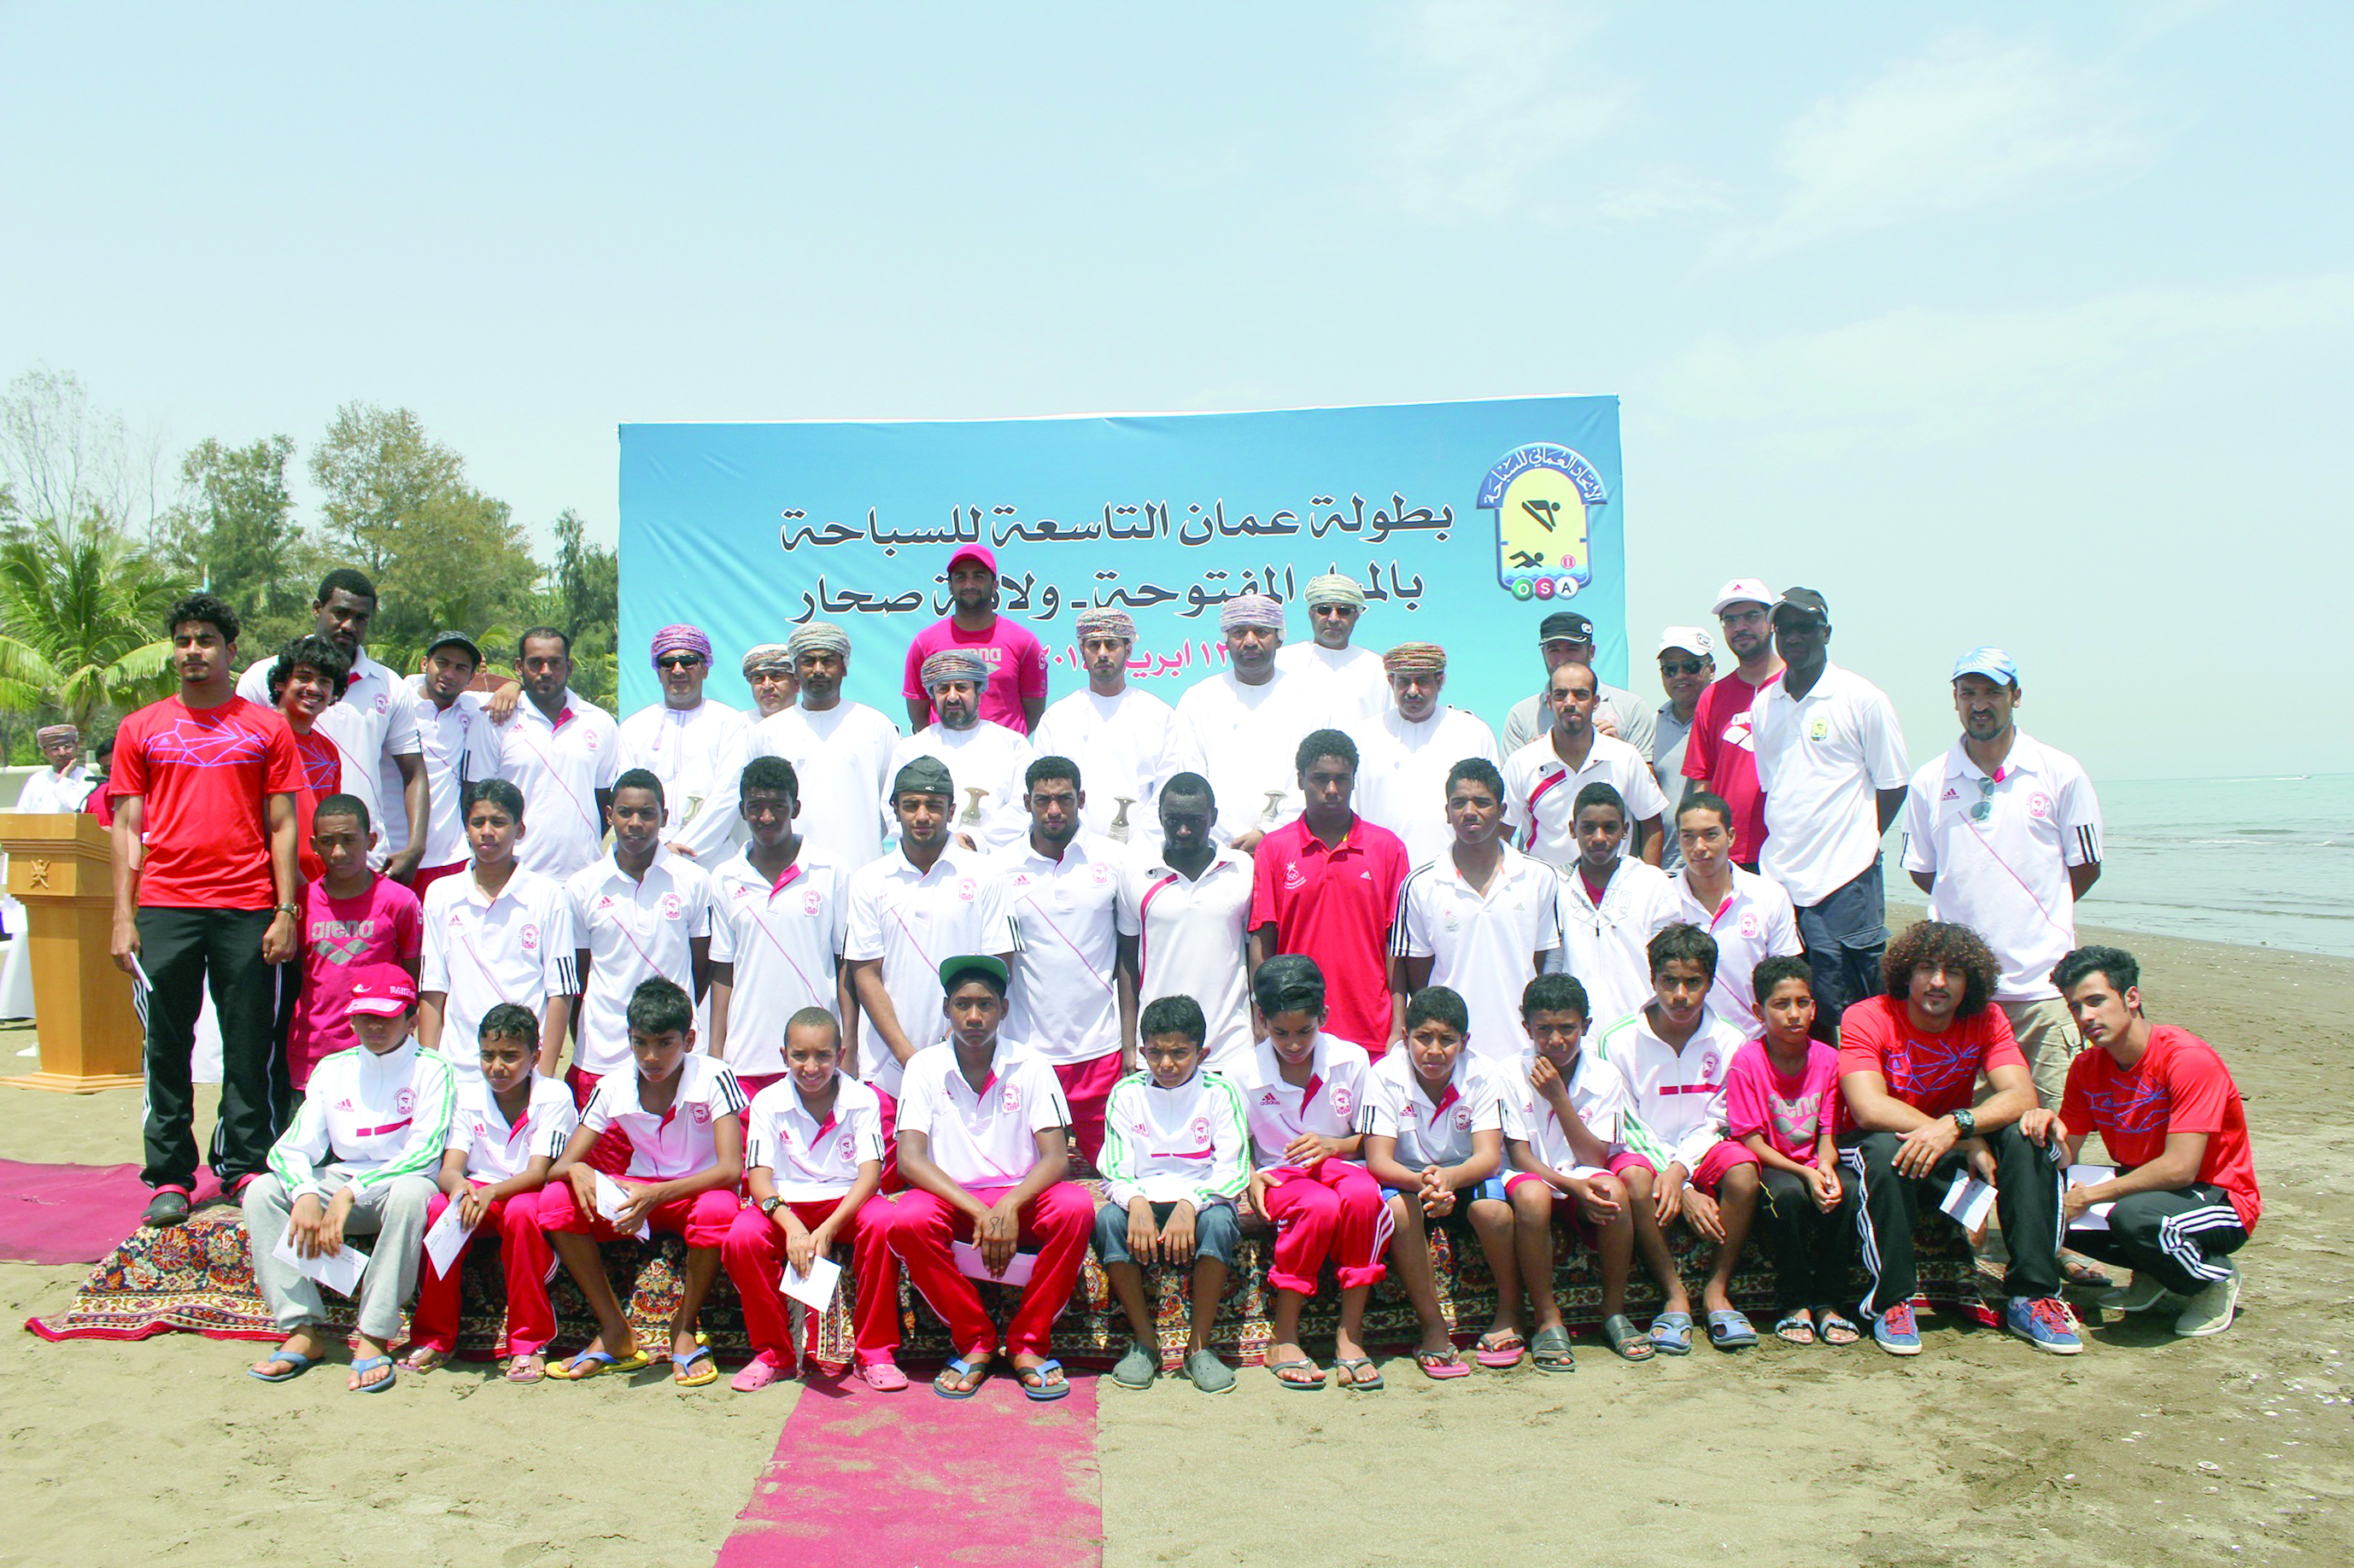 يحتضنها منتجع الميلينيوم بالمصنعة يوم الجمعة المقبل 

وزير السياحة يرعى انطلاق بطولة عمان العاشرة للسباحة في المياه المفتوحة